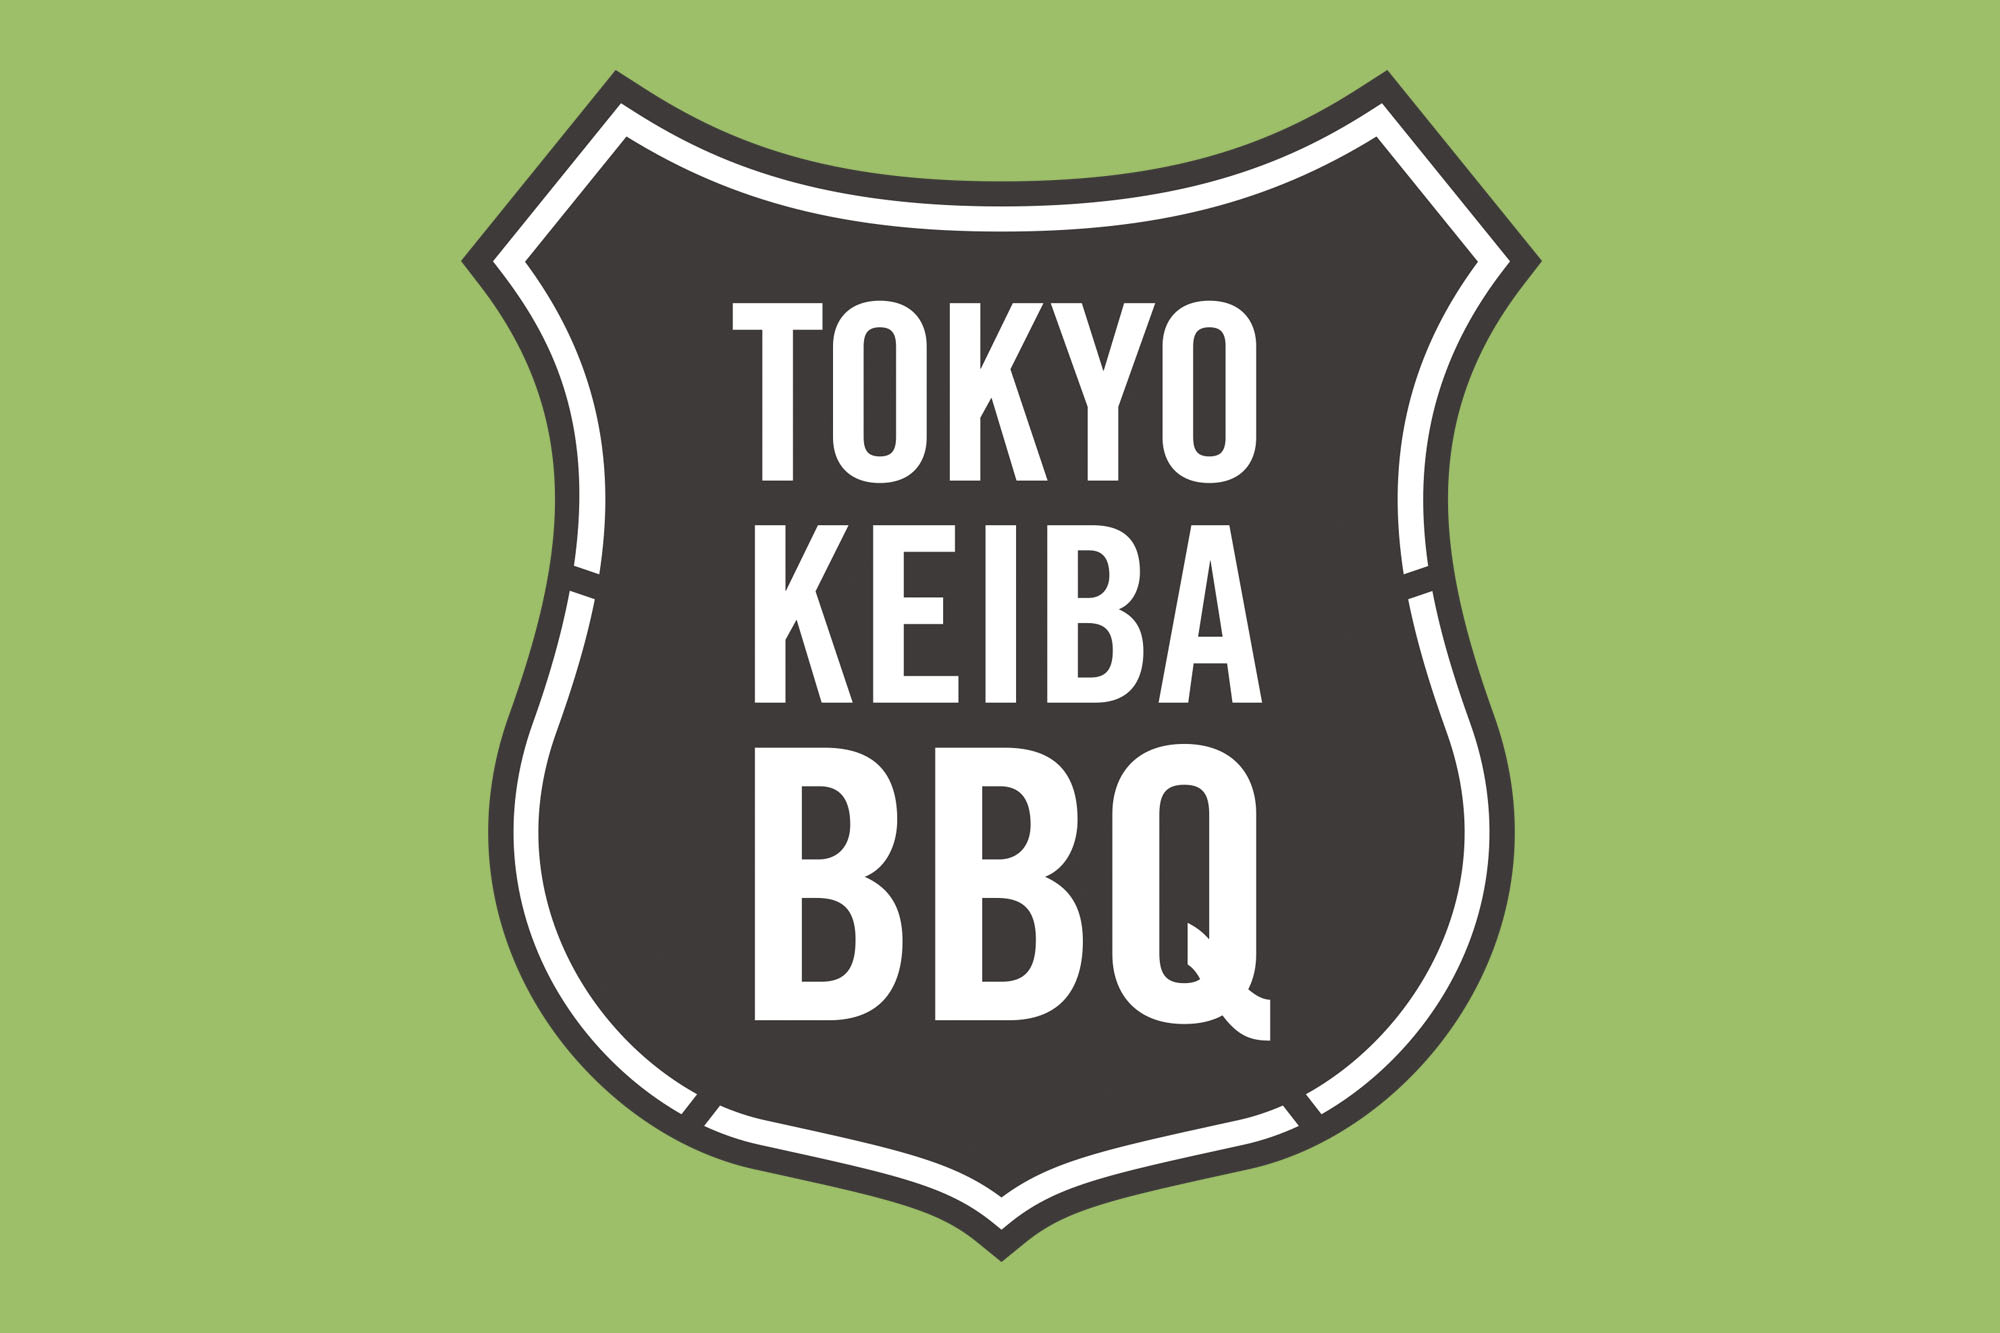   バーベキューを楽しみ、競馬に熱くなろう。東京競馬場内「手ぶらBBQ」 9日間の限定開催!